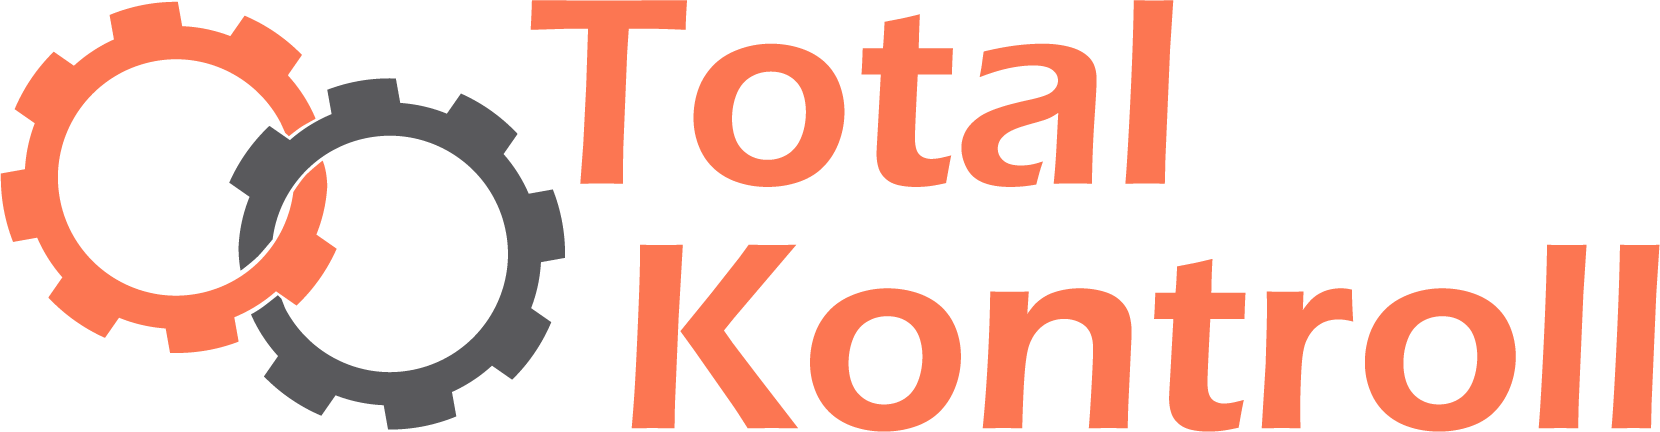 Total Kontroll logo